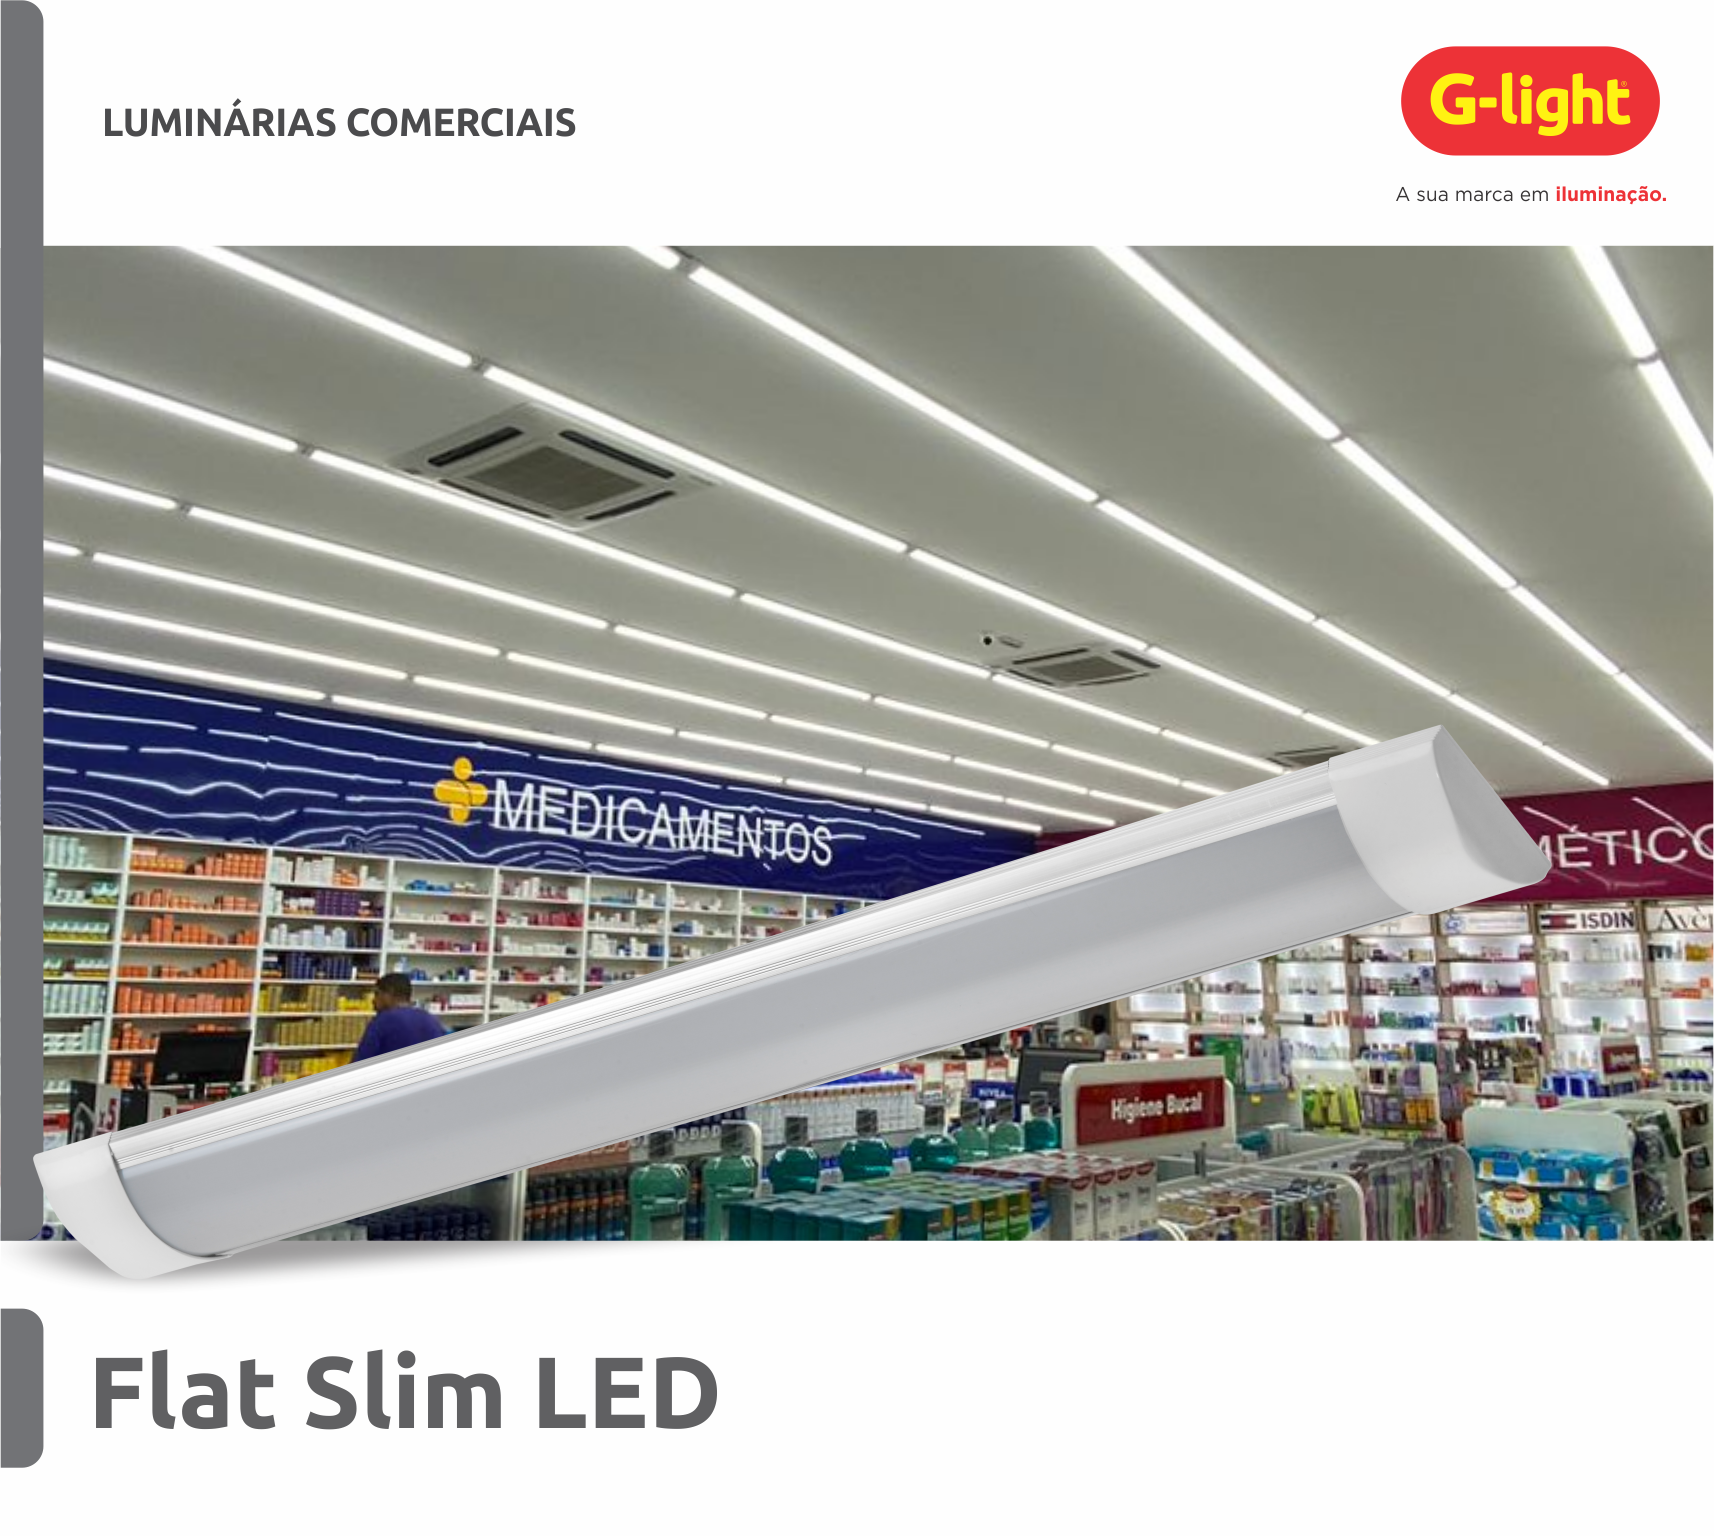 Flat Slim LED